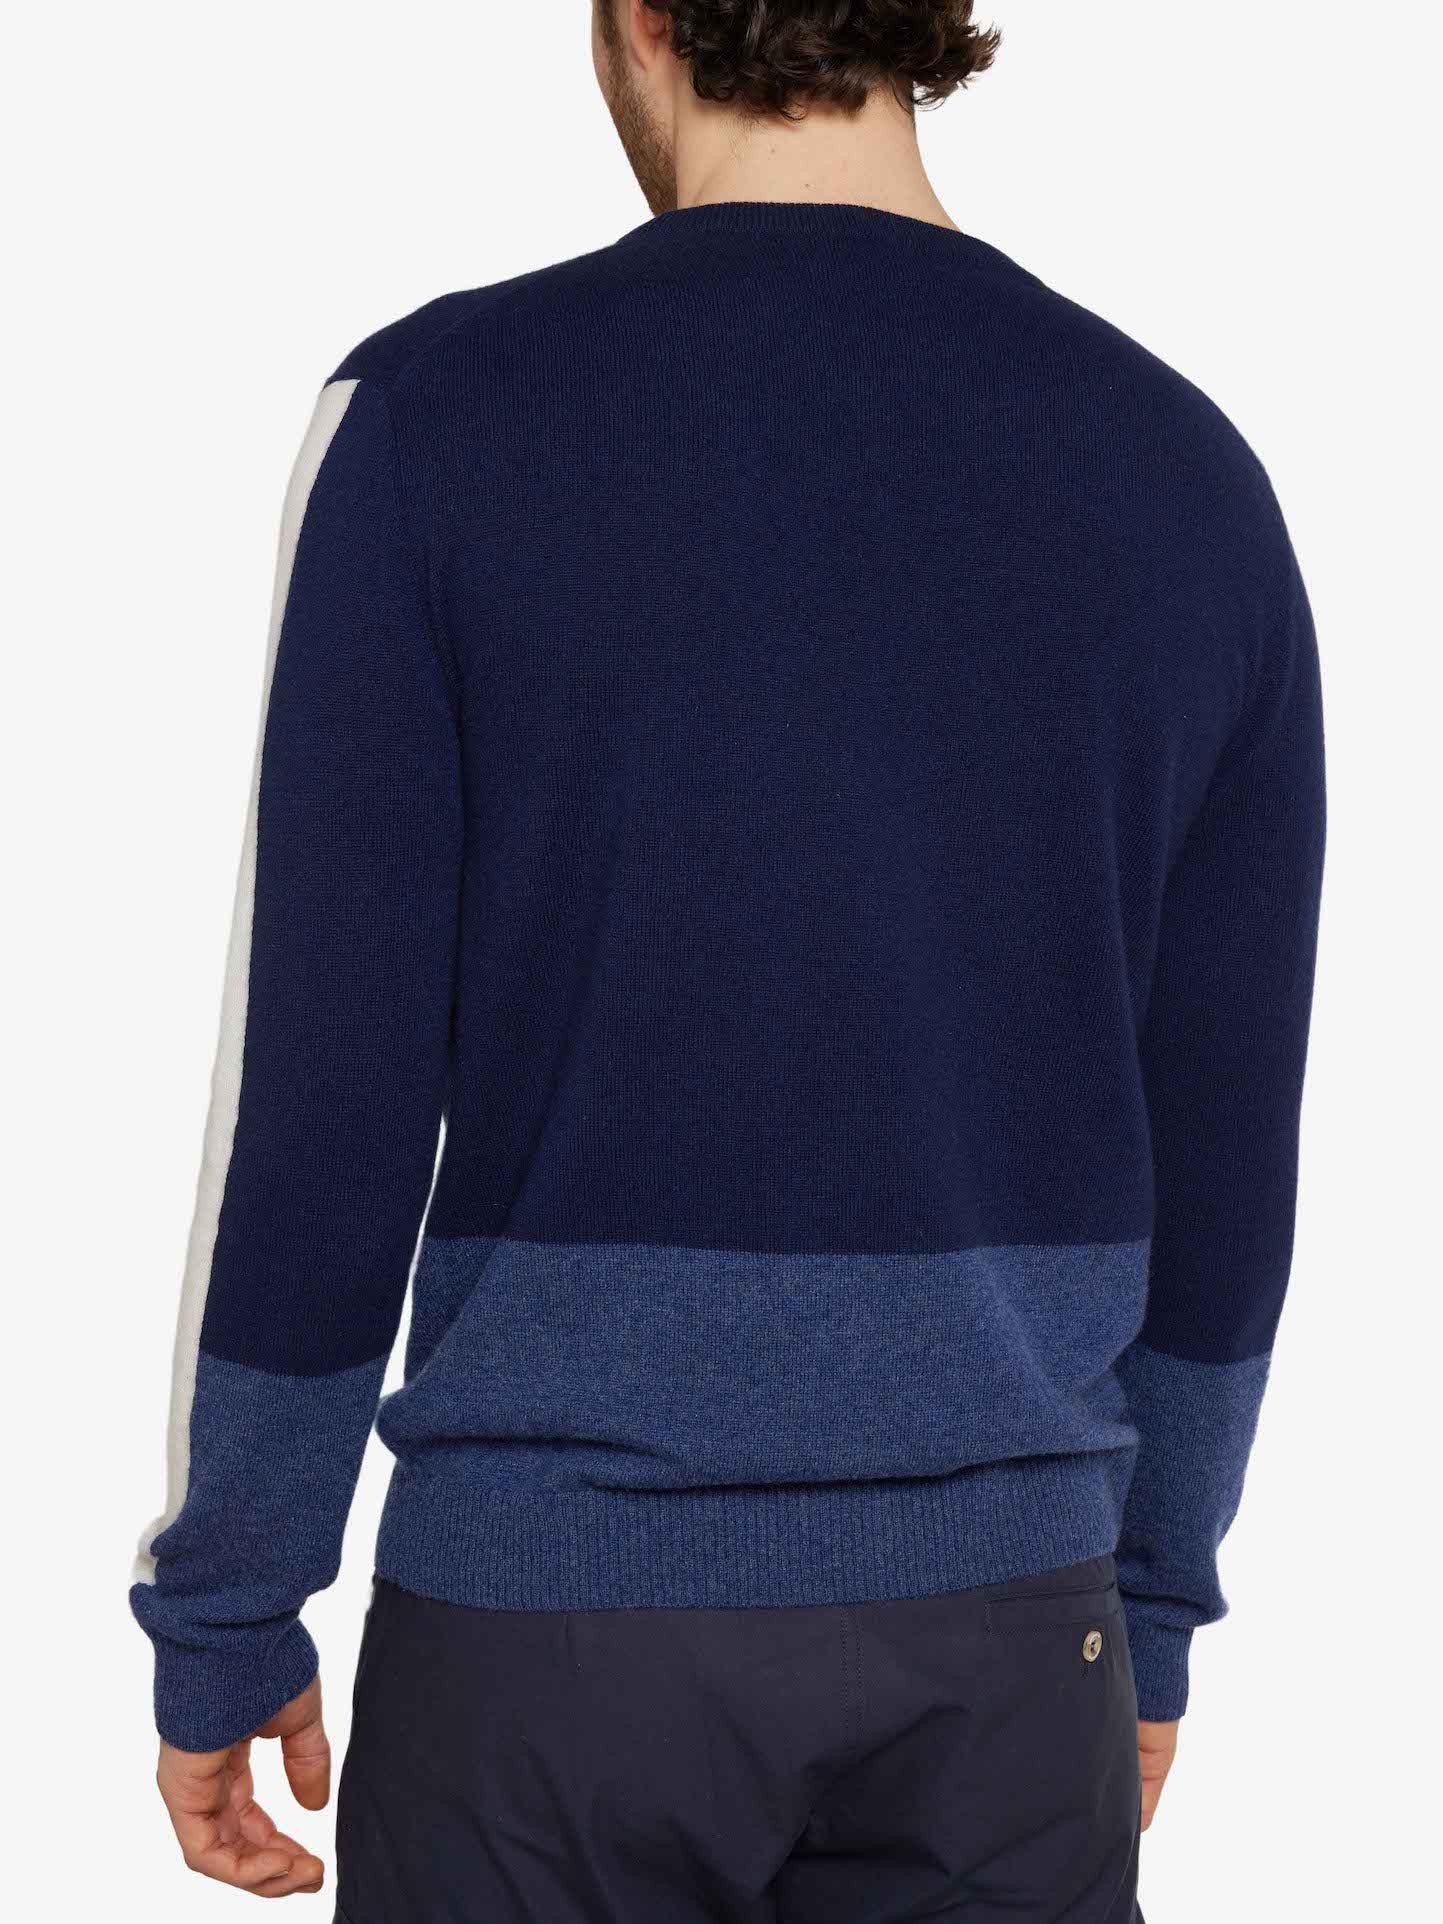 Morild Sweater Men Navy Blue